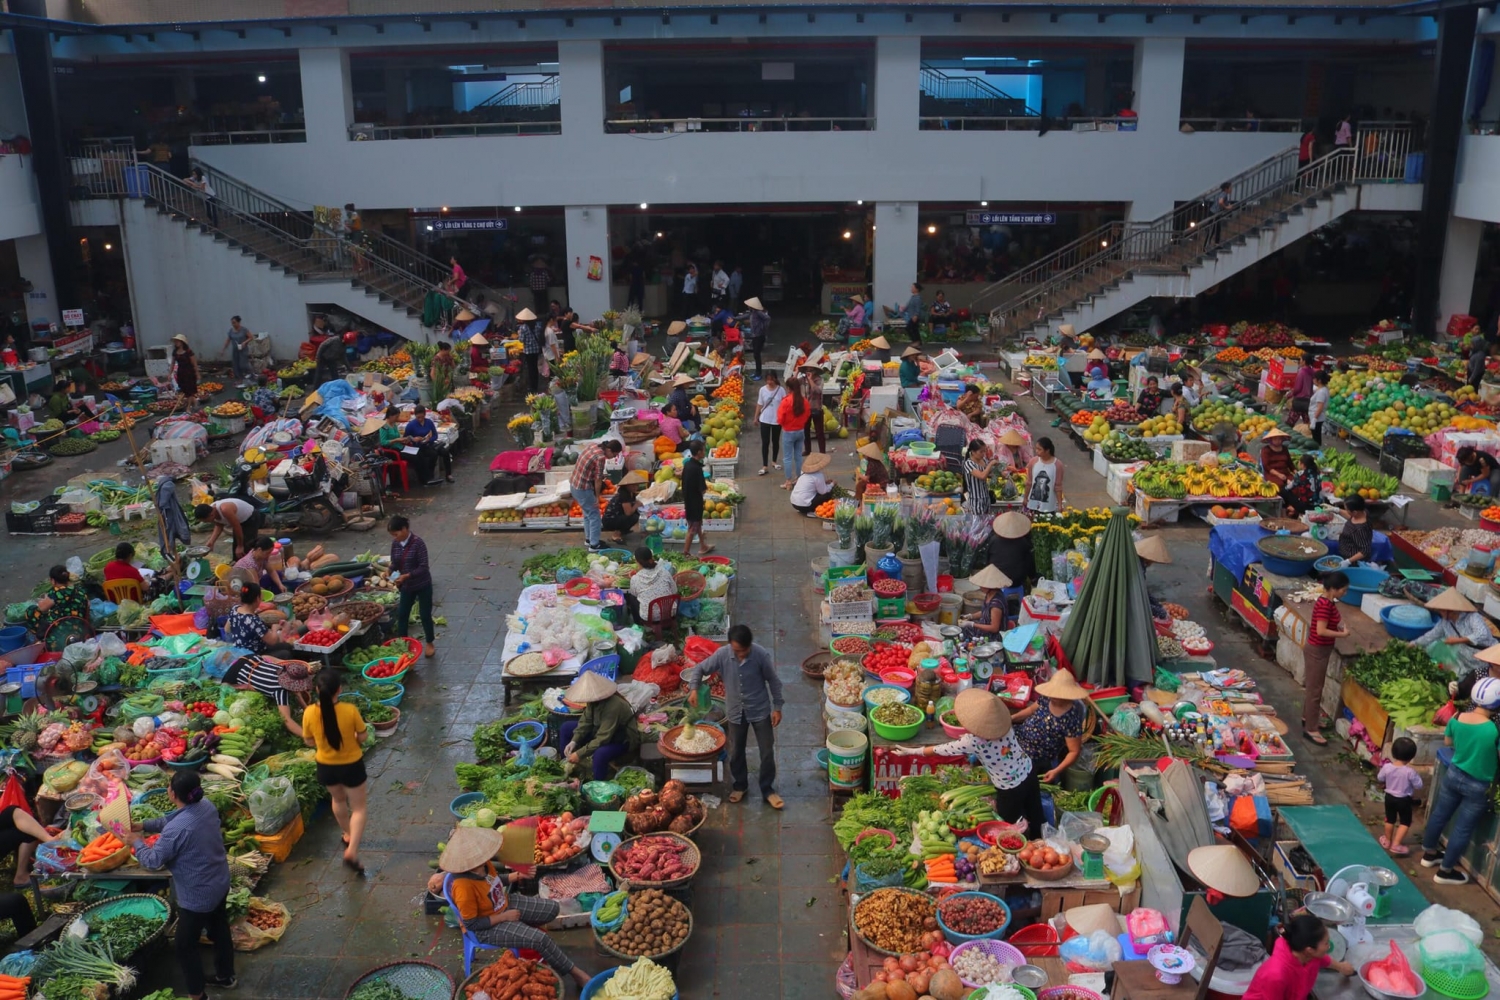 Du lịch trải nghiệm tại chợ truyền thống Vĩnh Yên